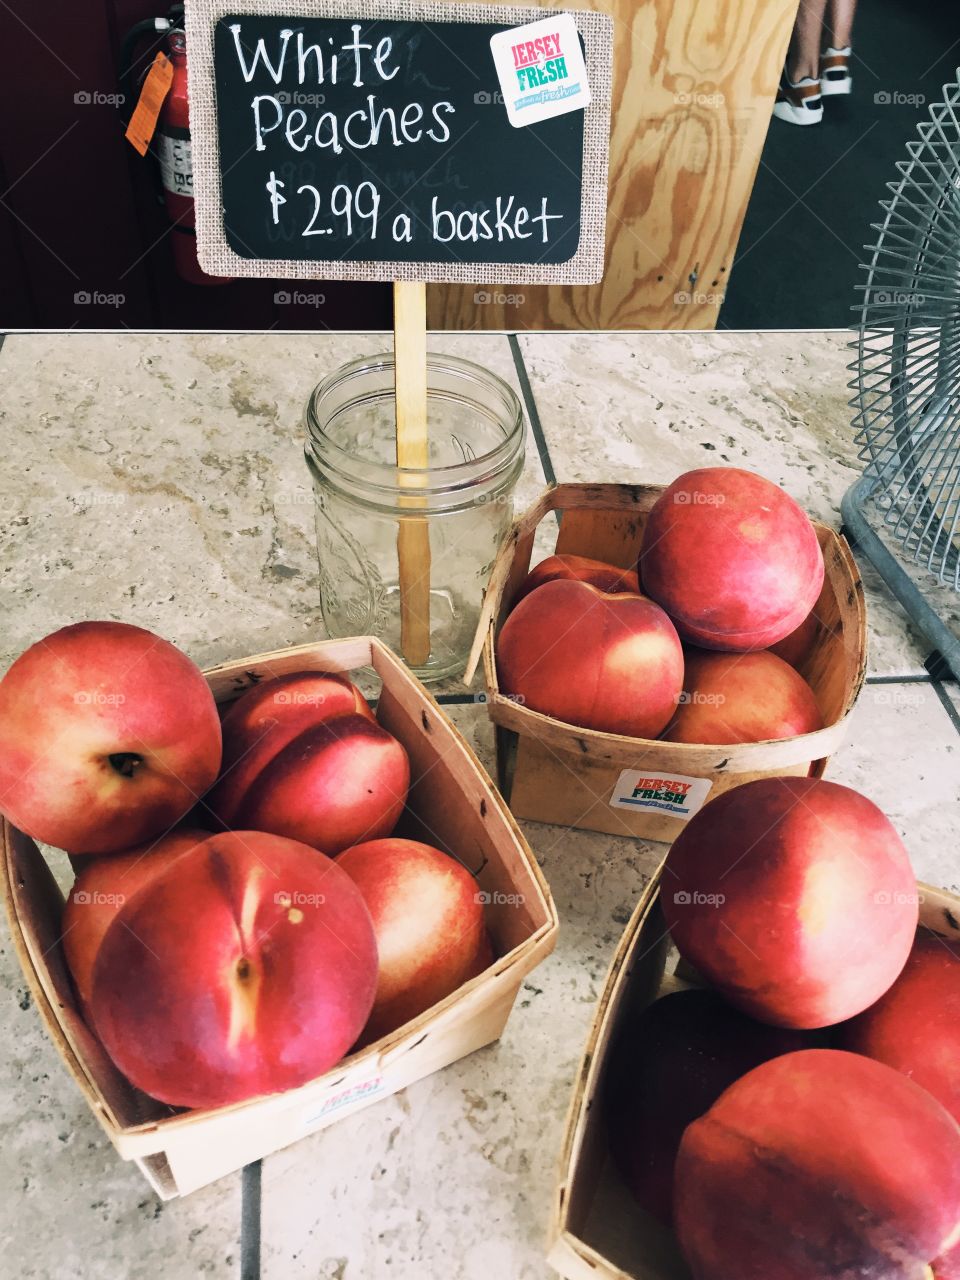 Baskets of fresh peaches